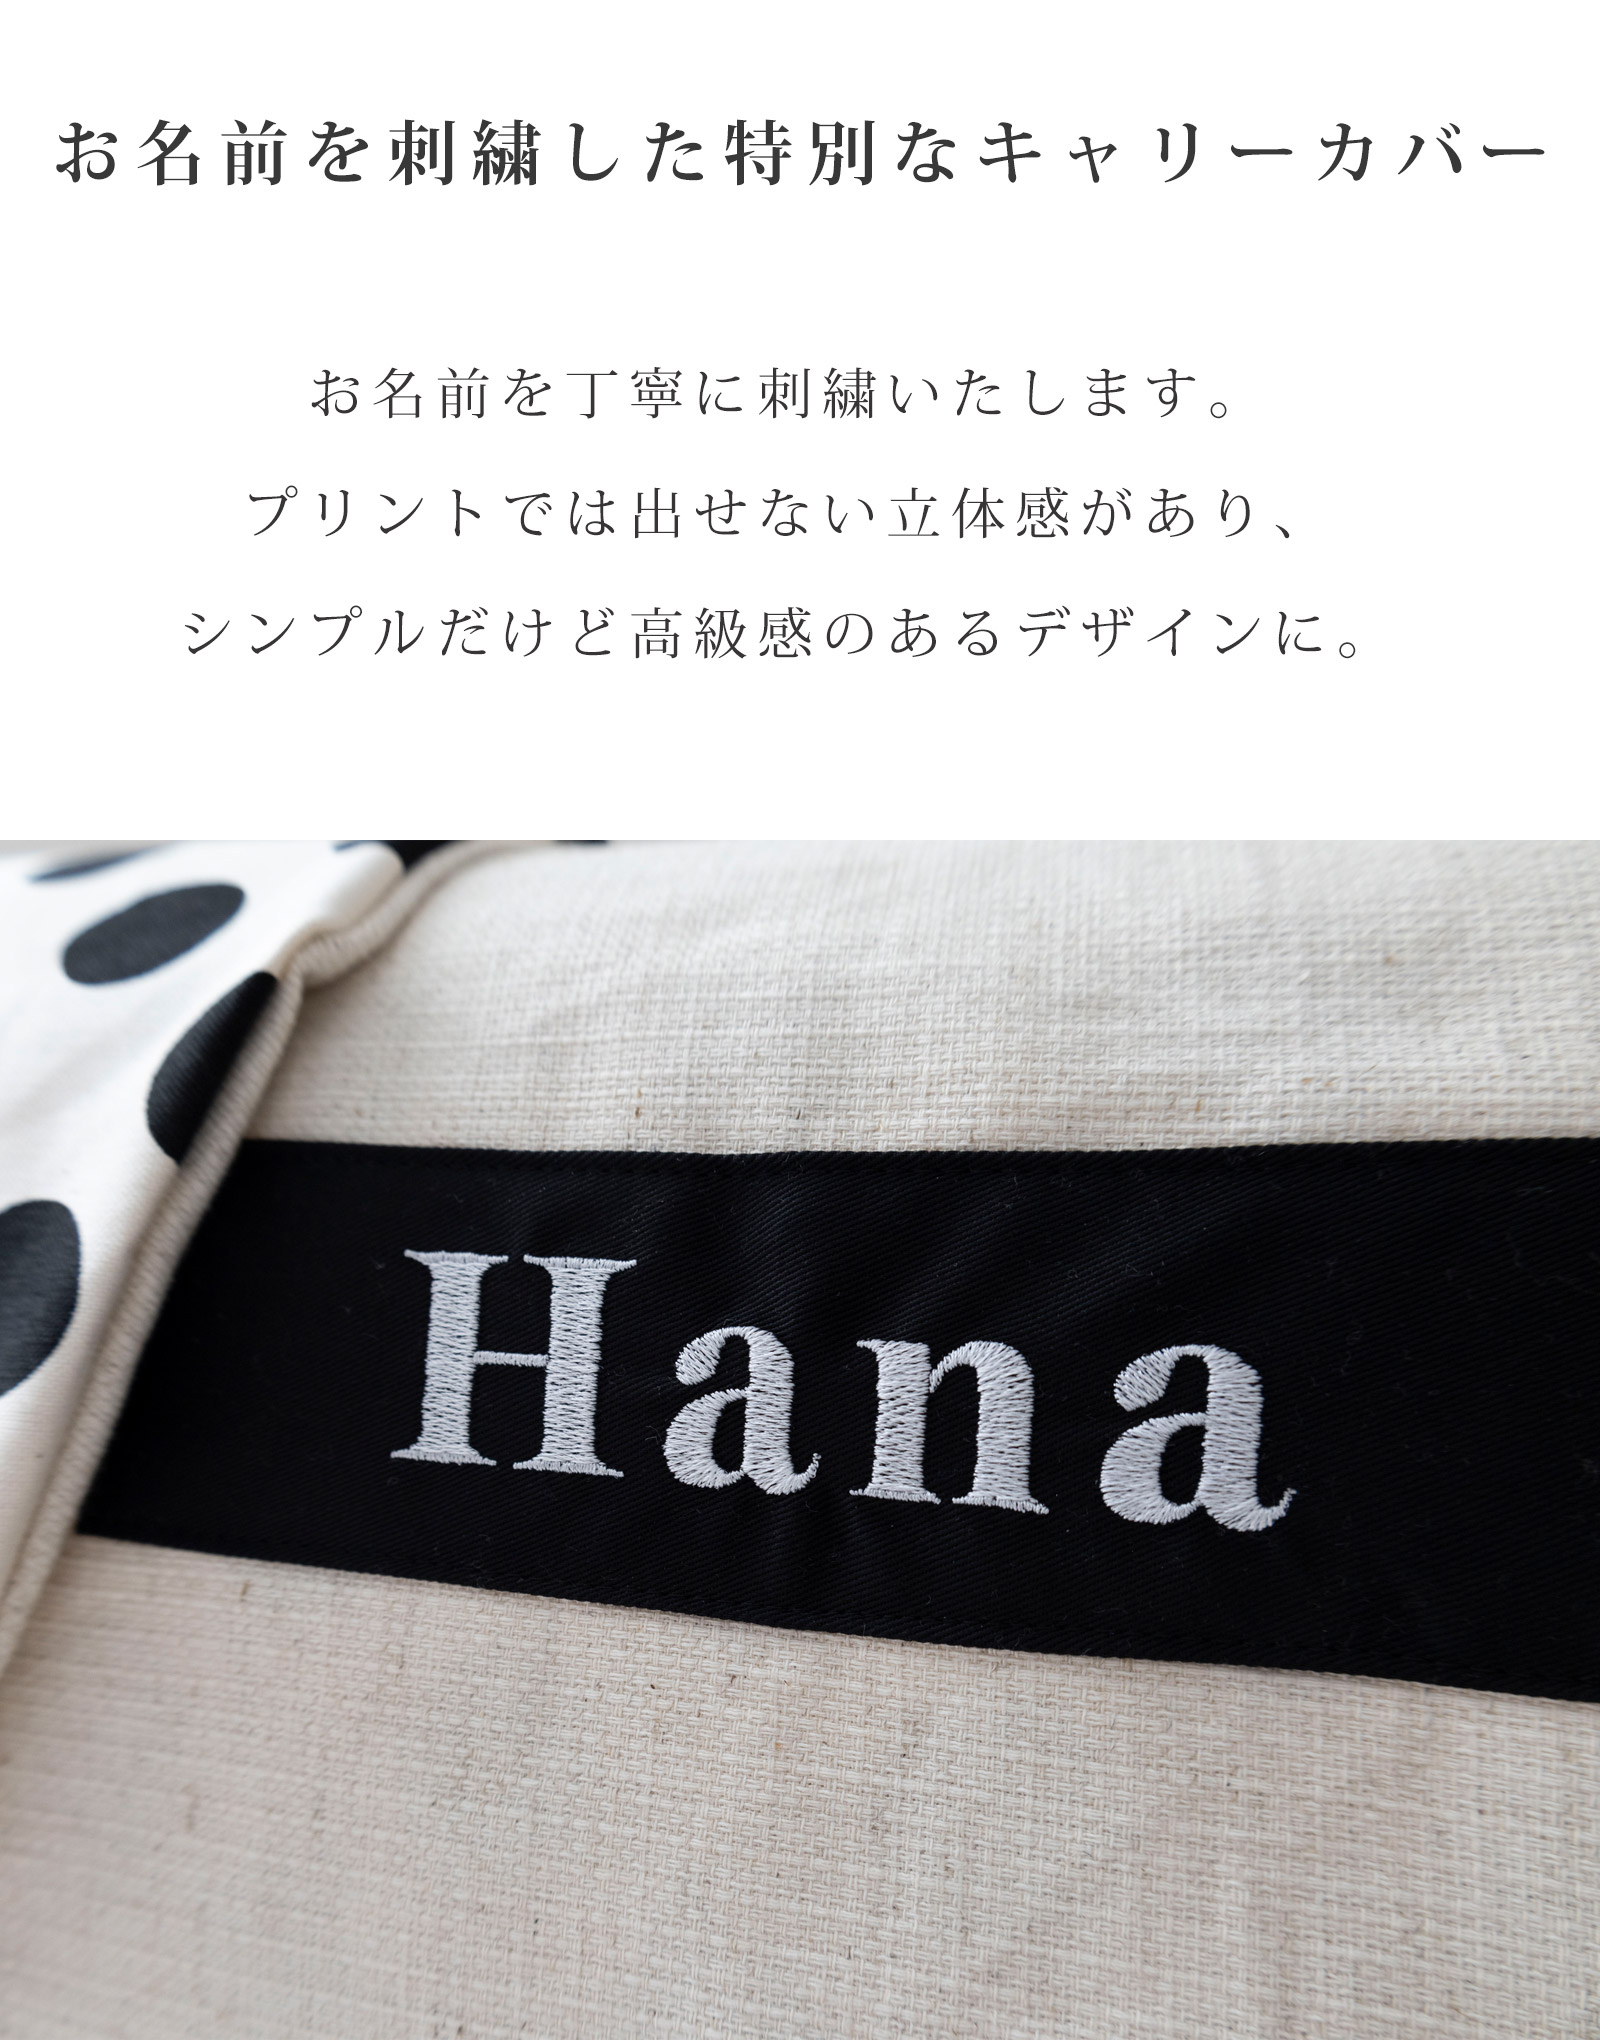 日本製 キャリー用カバー クレートカバー 犬 猫 名入れ 刺繍